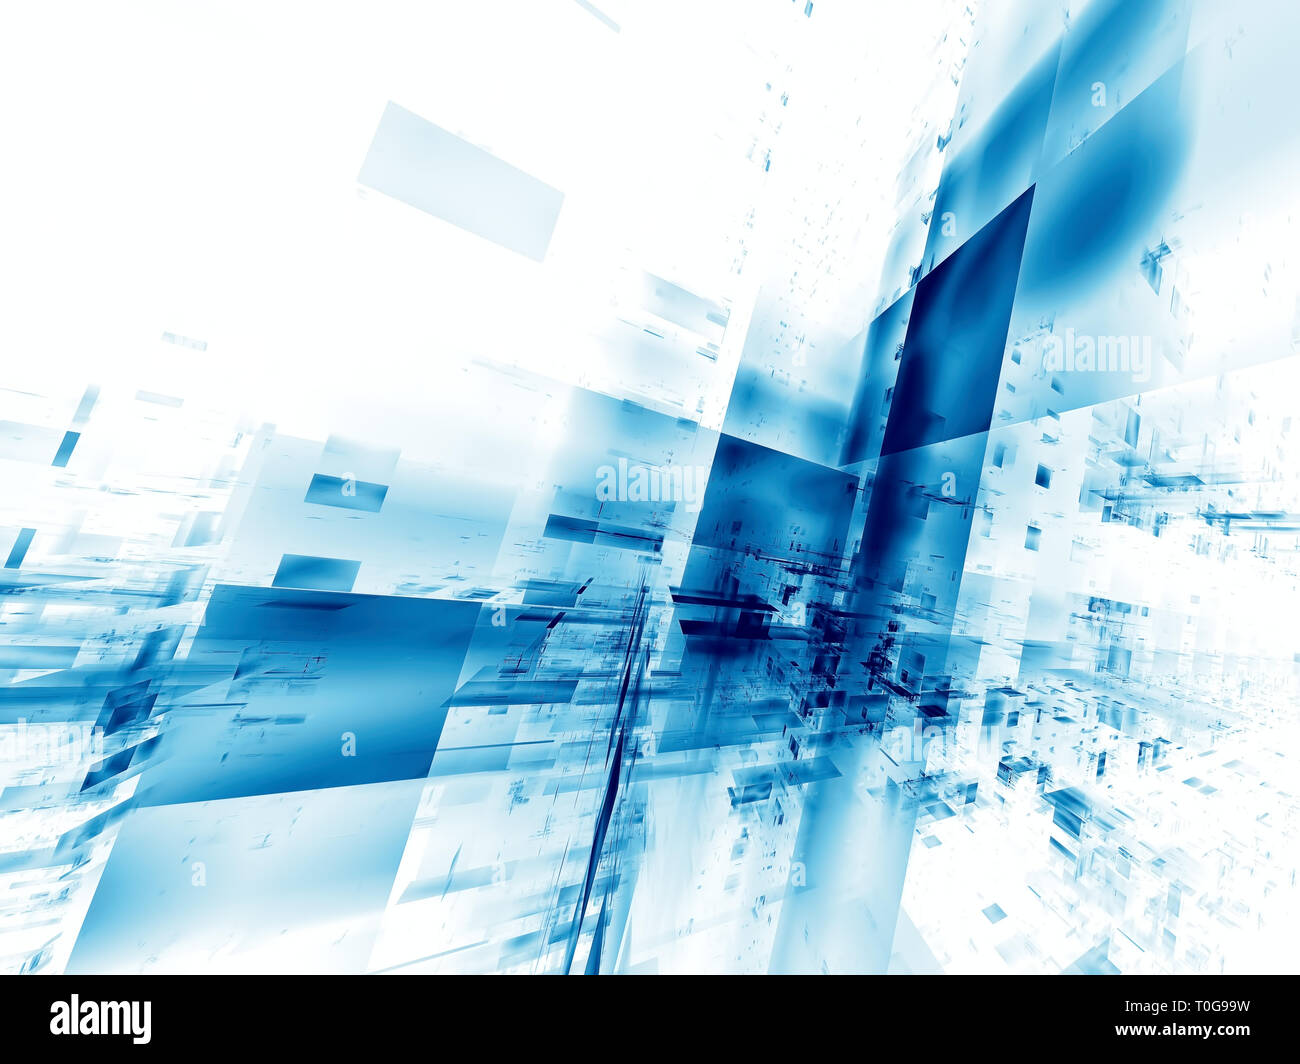 Du point de vue blanc et bleu avec l'arrière-plan copie espace - abstract image générée numériquement Banque D'Images